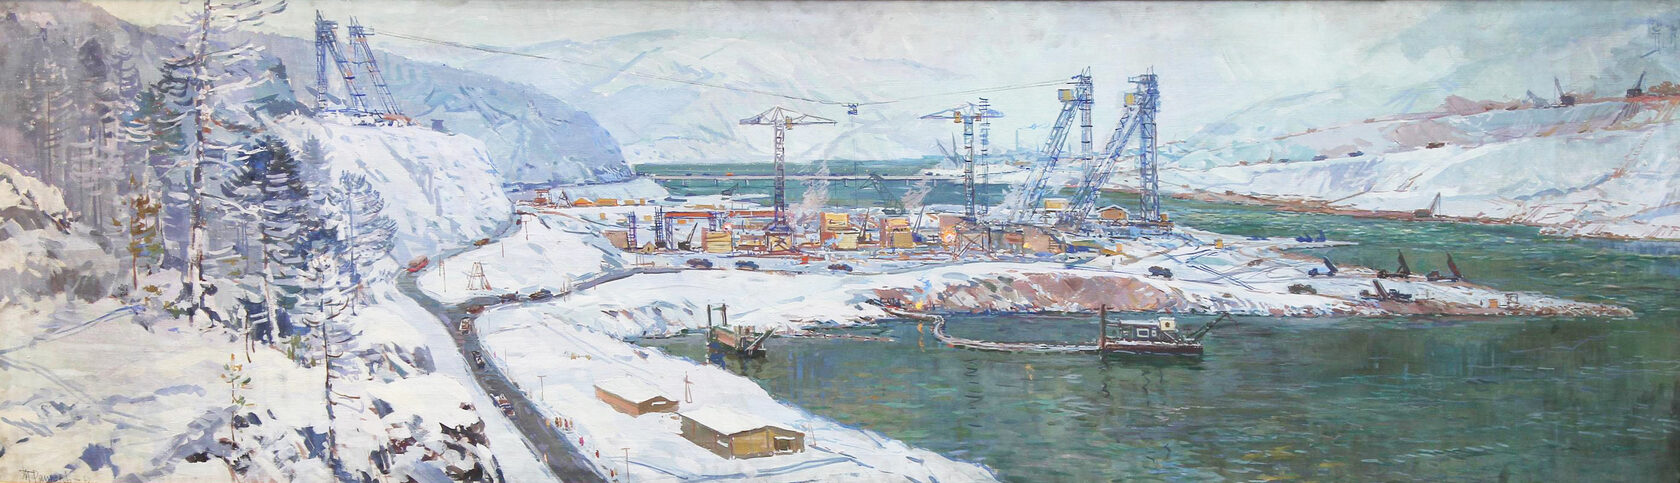 Ряннель Т.В. Строительство Красноярской ГЭС. 1962 г.